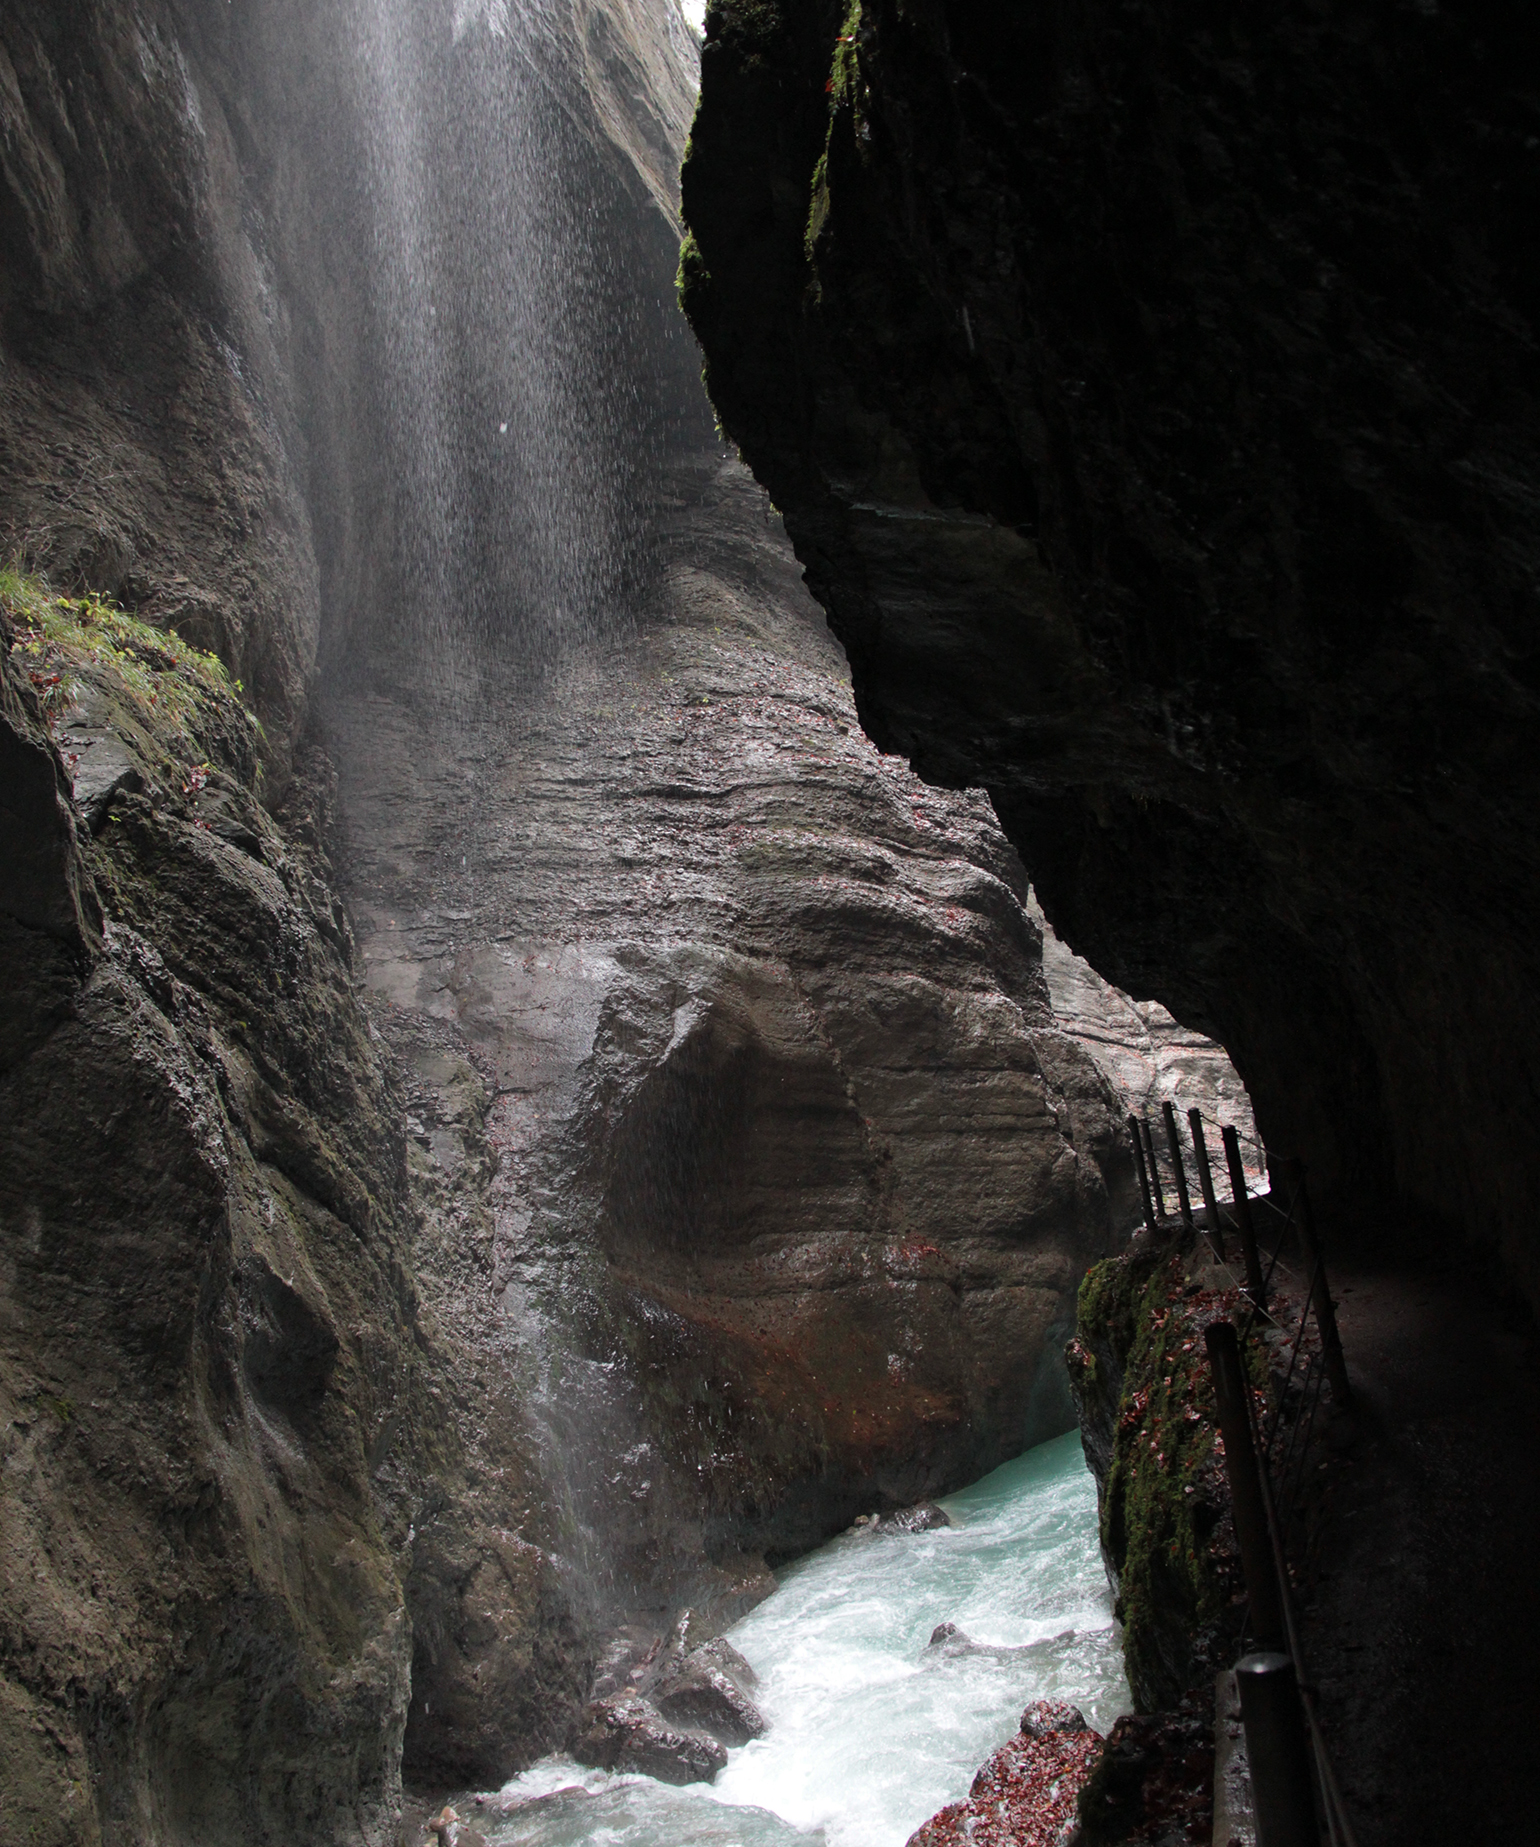 Paredão avança sobre o rio enquanto a água cai desde cima da estrutura do lado oposto, em Parnchat Gorge